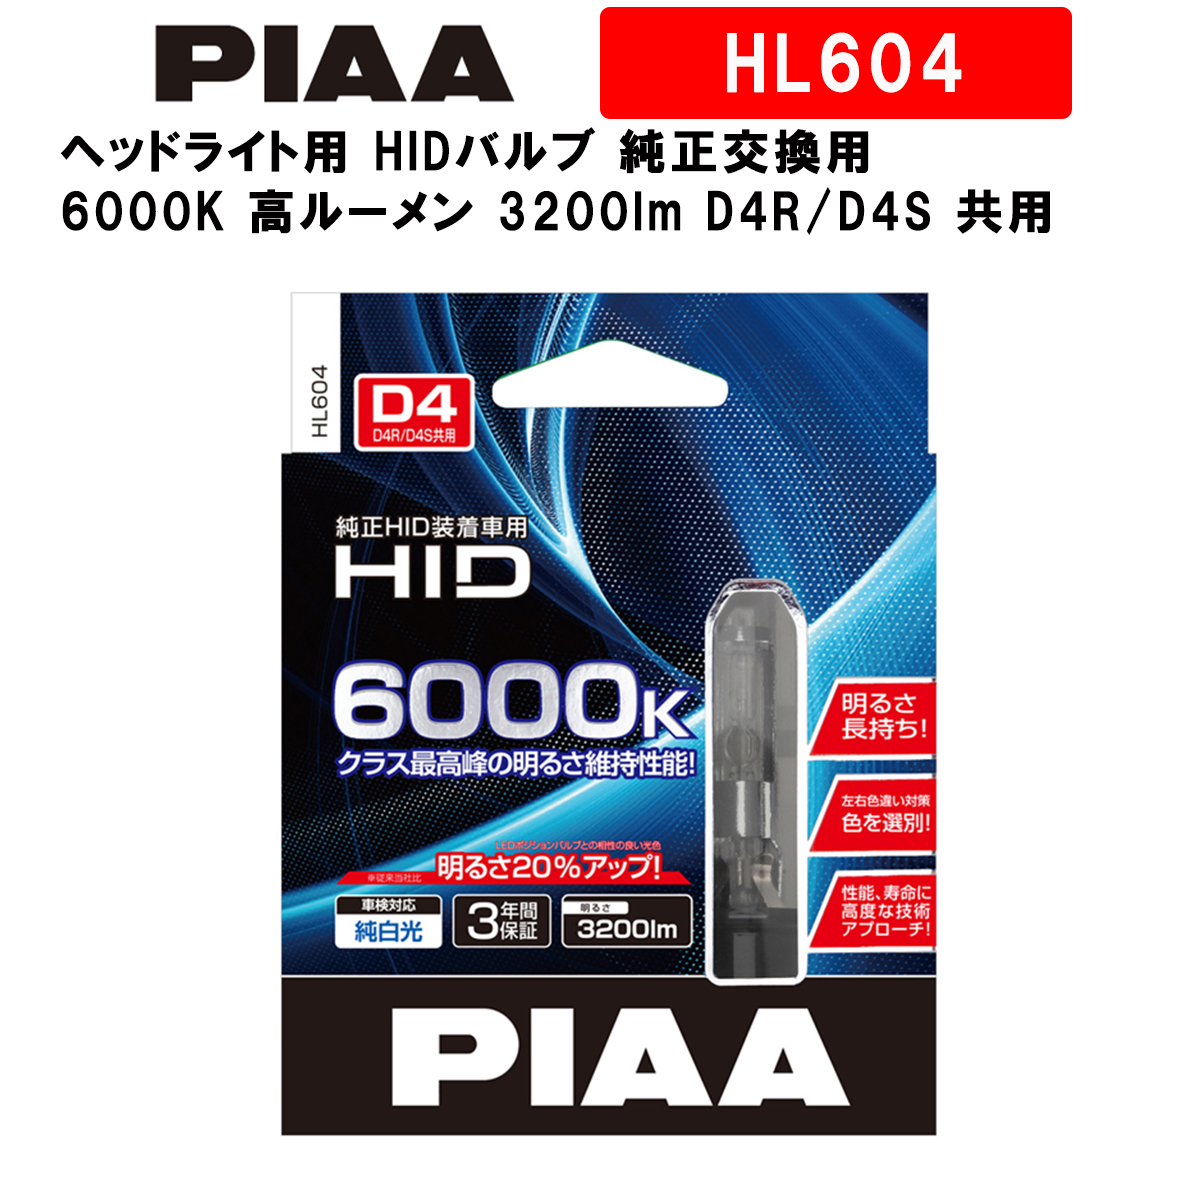 明るさ約20％アップの最新HIDバルブ PIAA ヘッドライト用 超格安一点 HIDバルブ 純正交換用 6000K 高ルーメン 3200lm 返品?交換対象商品 共用 HL604 車検対応 2個入 3年保証 D4R D4S